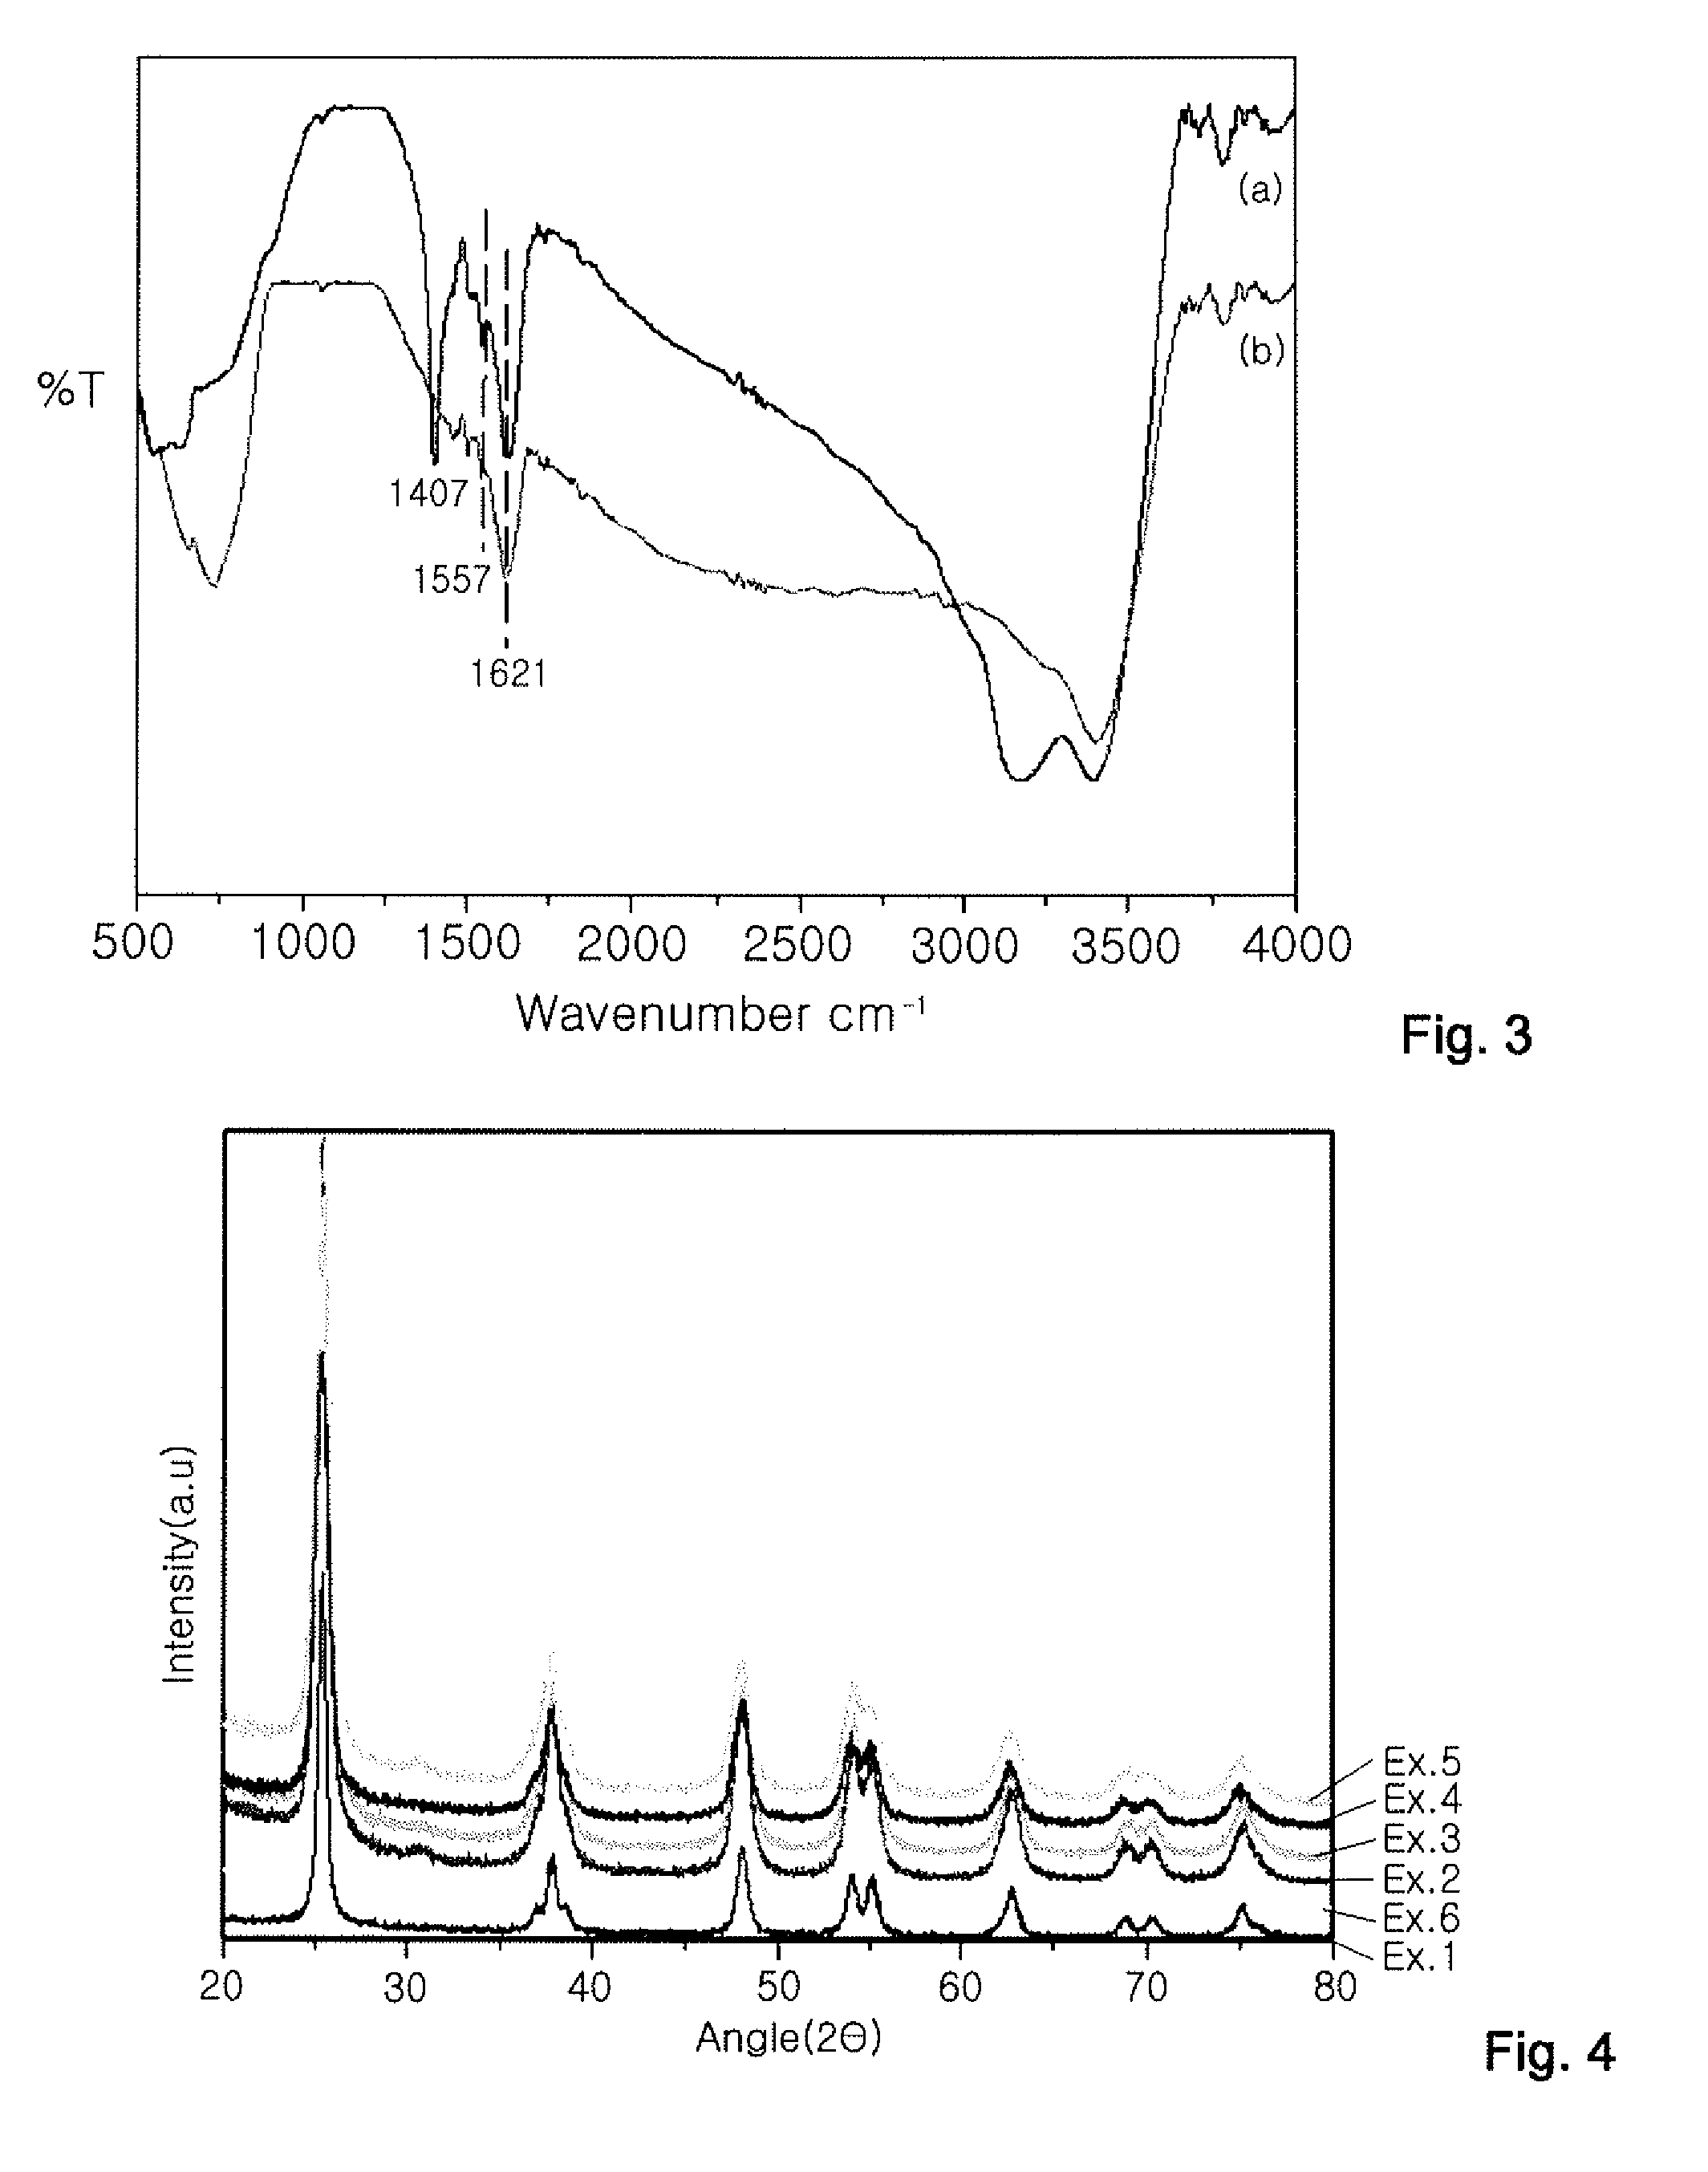 PRODUCTION METHOD OF TITANIUM DIOXIDE (TiO2) PHOTOCATALYST AND TiO2 PHOTOCATALYST PRODUCED BY THE SAME